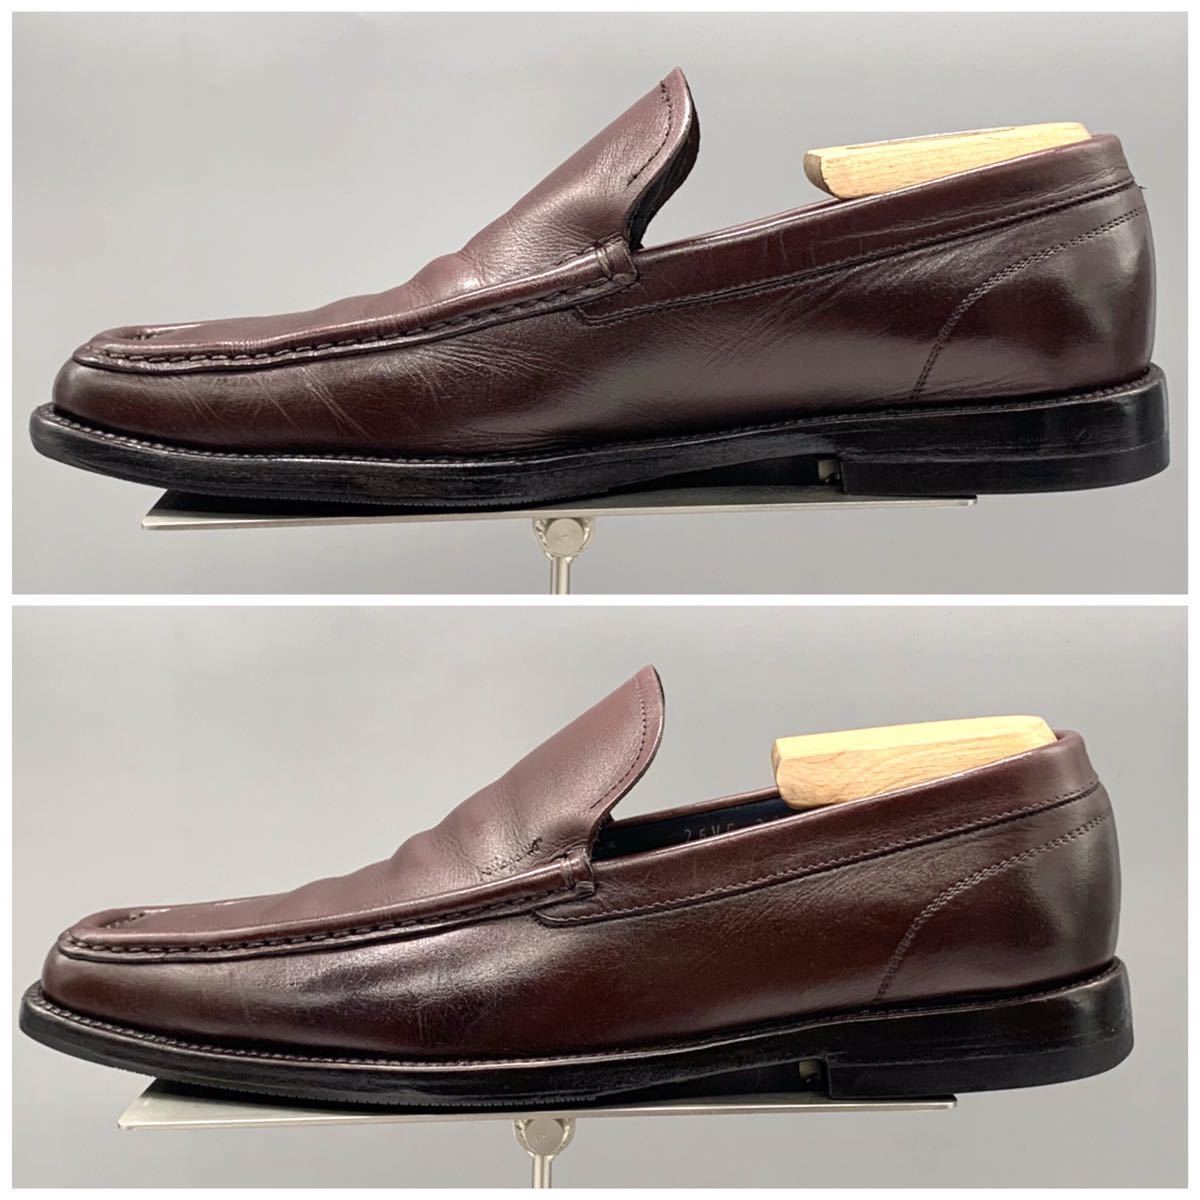 Salvatore Ferragamo (サルヴァトーレフェラガモ) スクエアトゥ ローファー スリッポン ビジネス レザー バーガンディー US6 24cm 革靴_画像5